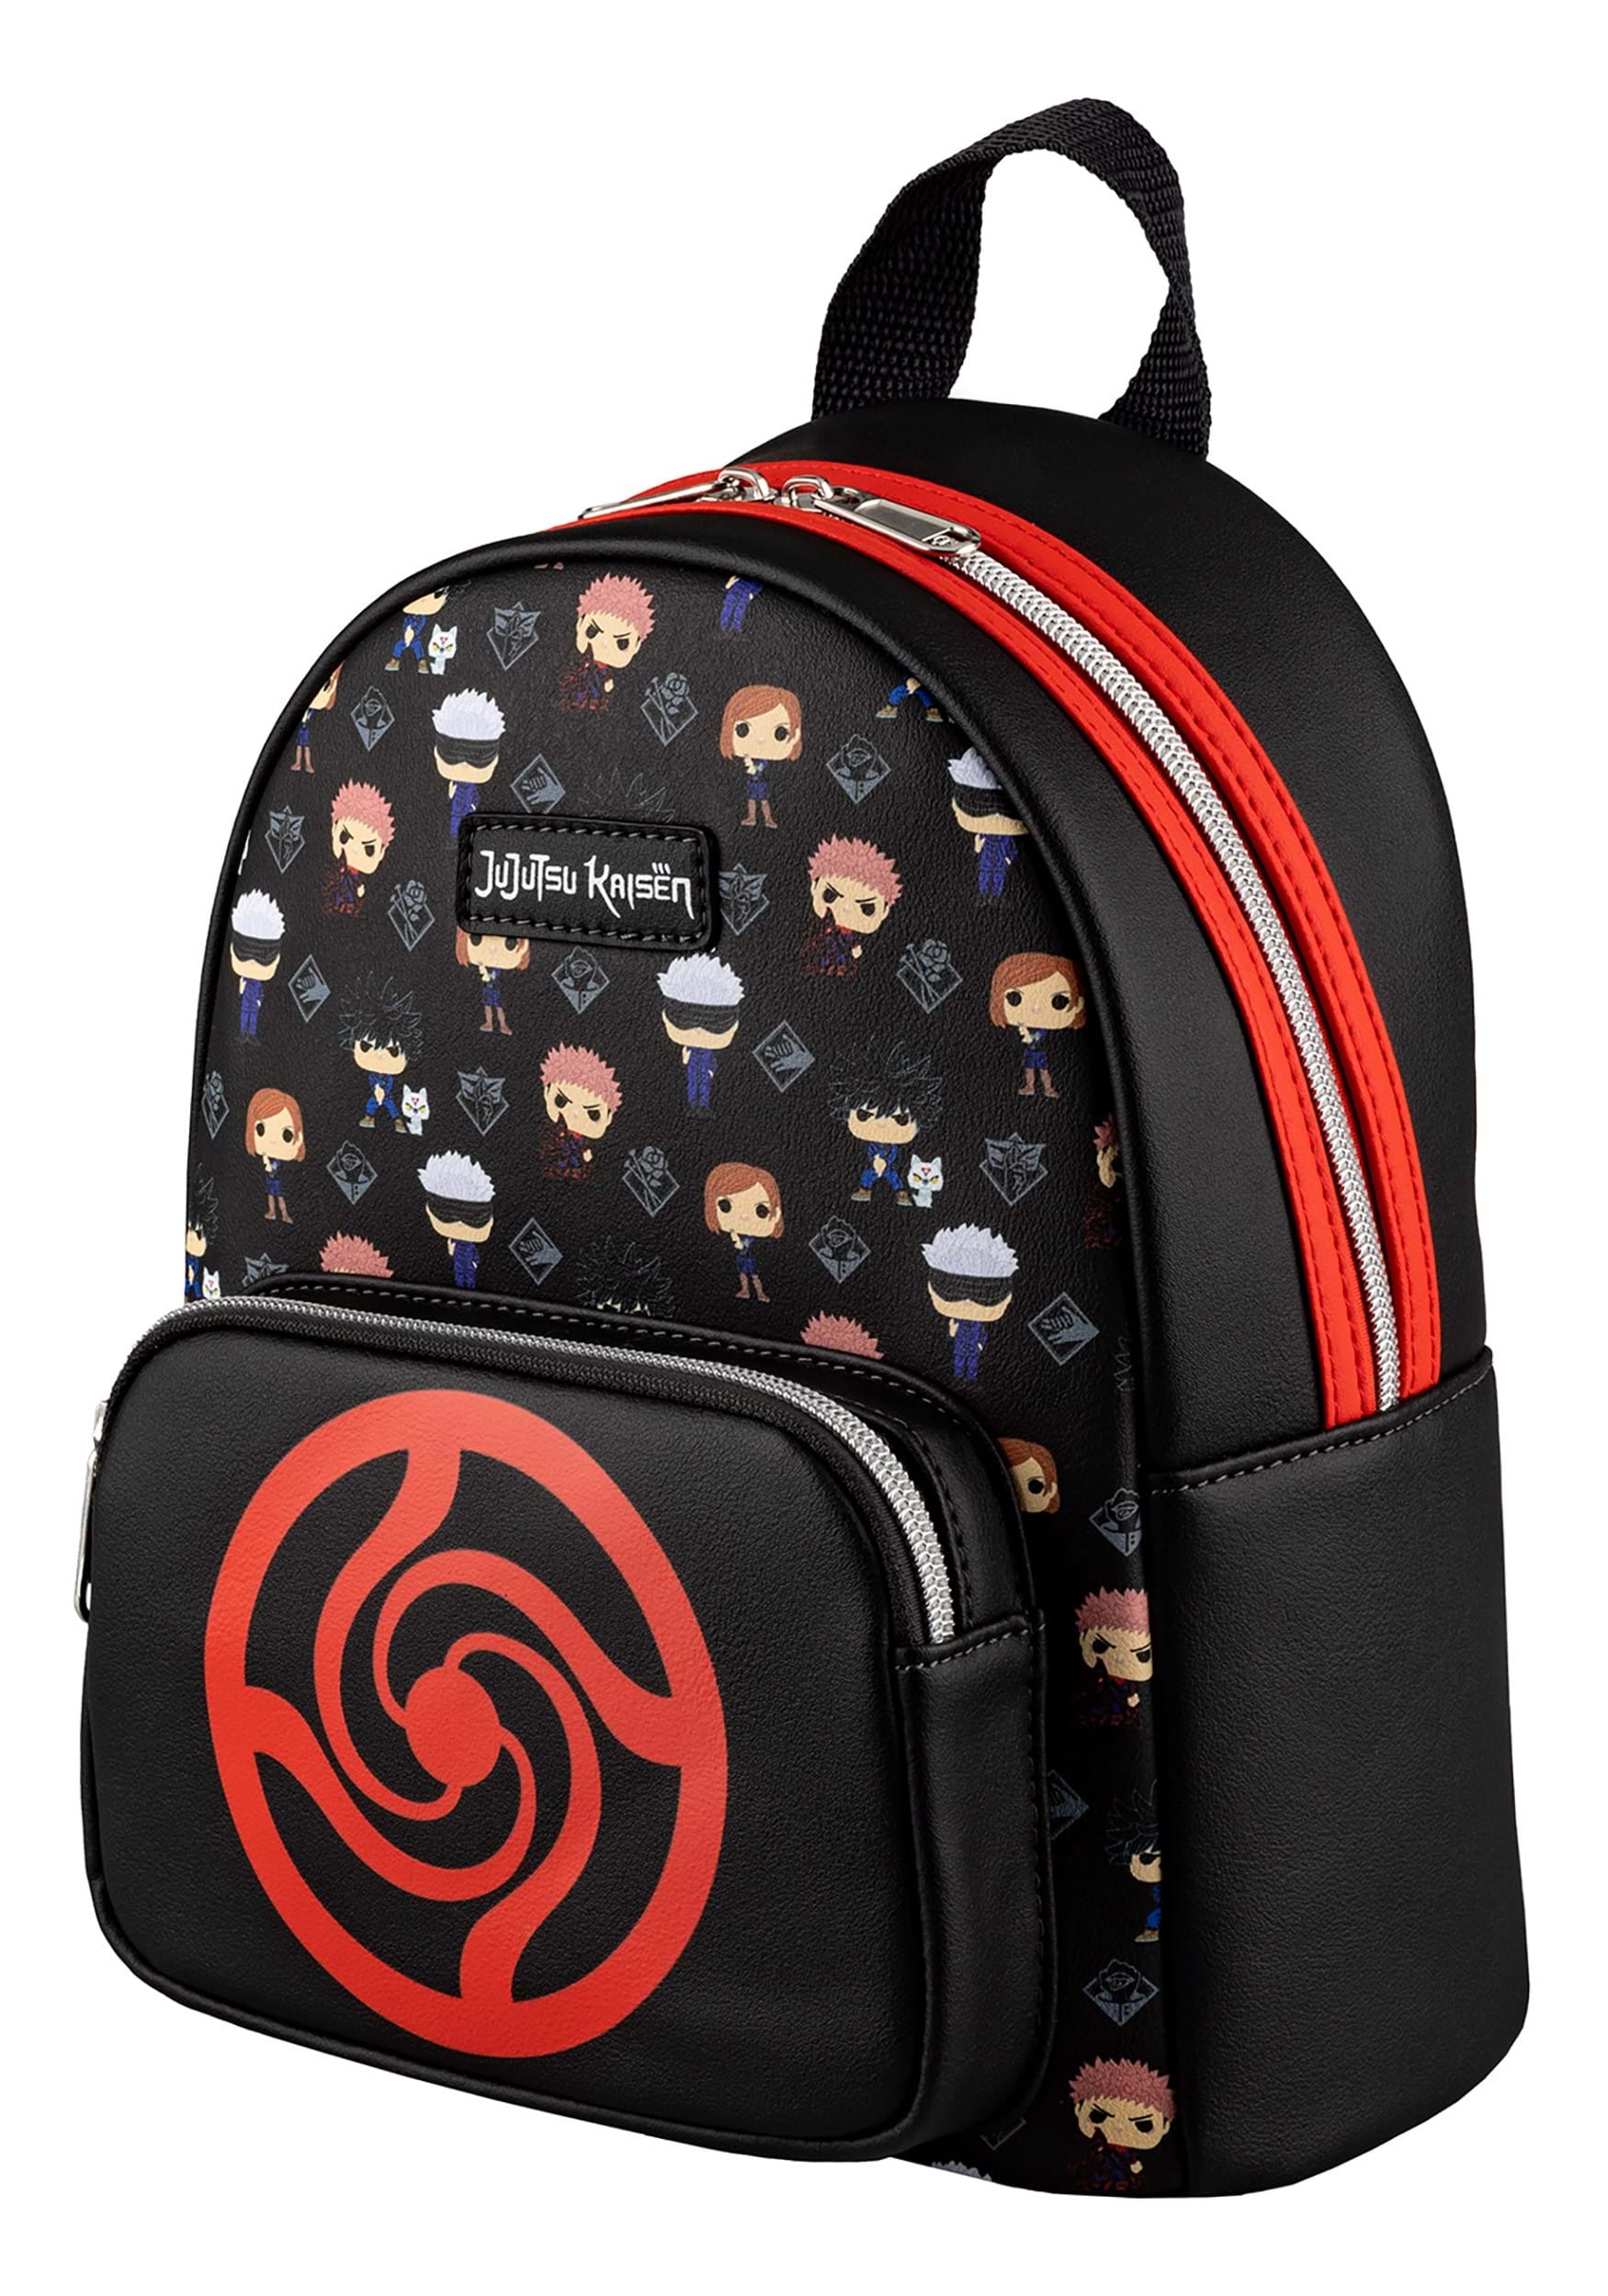 Kawaii Backpack for School Aesthetic Bookbag Cute Anime Backpacks for Girls  with | eBay